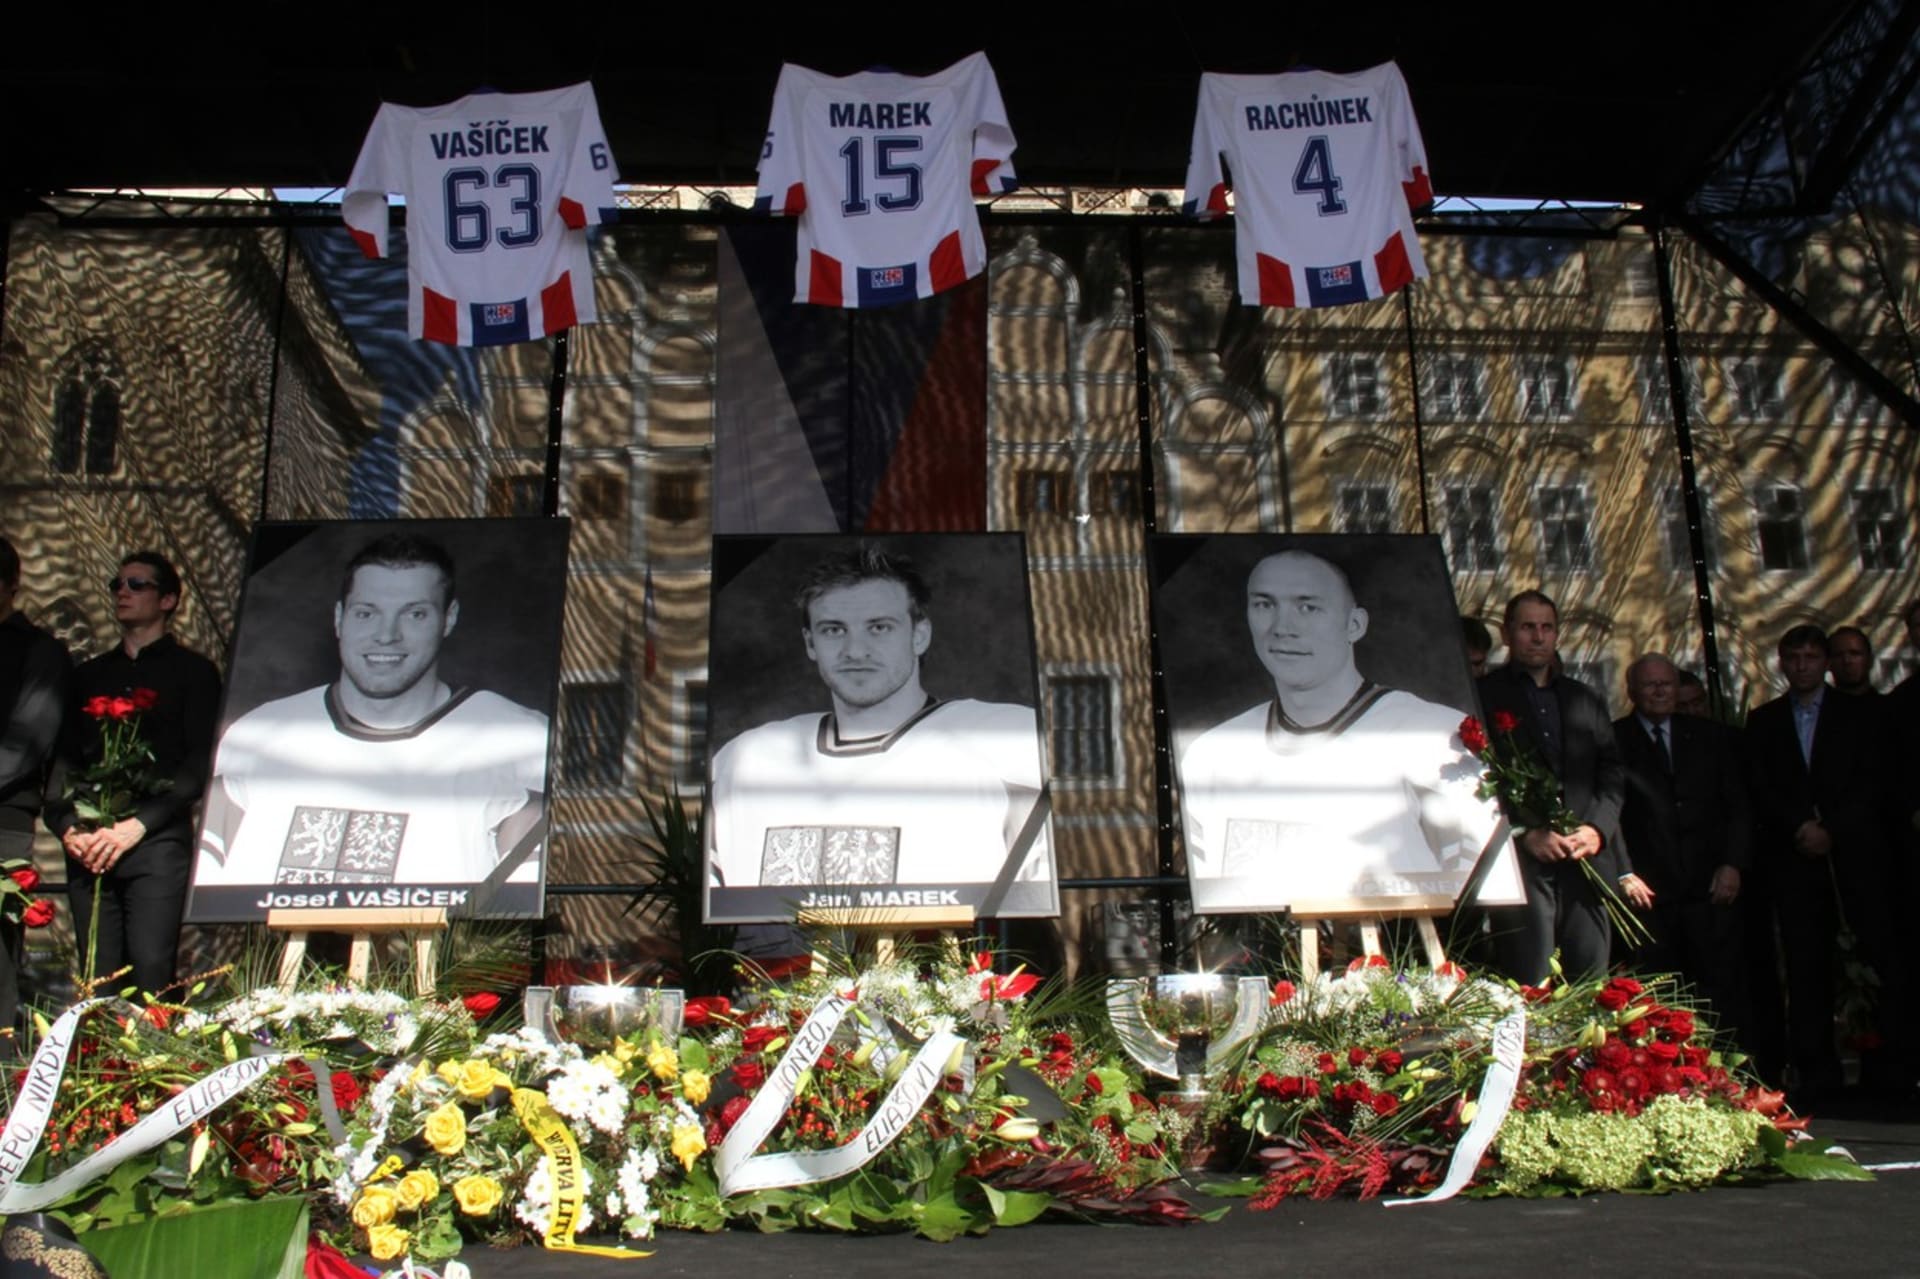 Vzpomínka na české hokejisty, kteří při tragédii zemřeli – Josefa Vašíčka, Jana Marka a Karla Rachůnka.